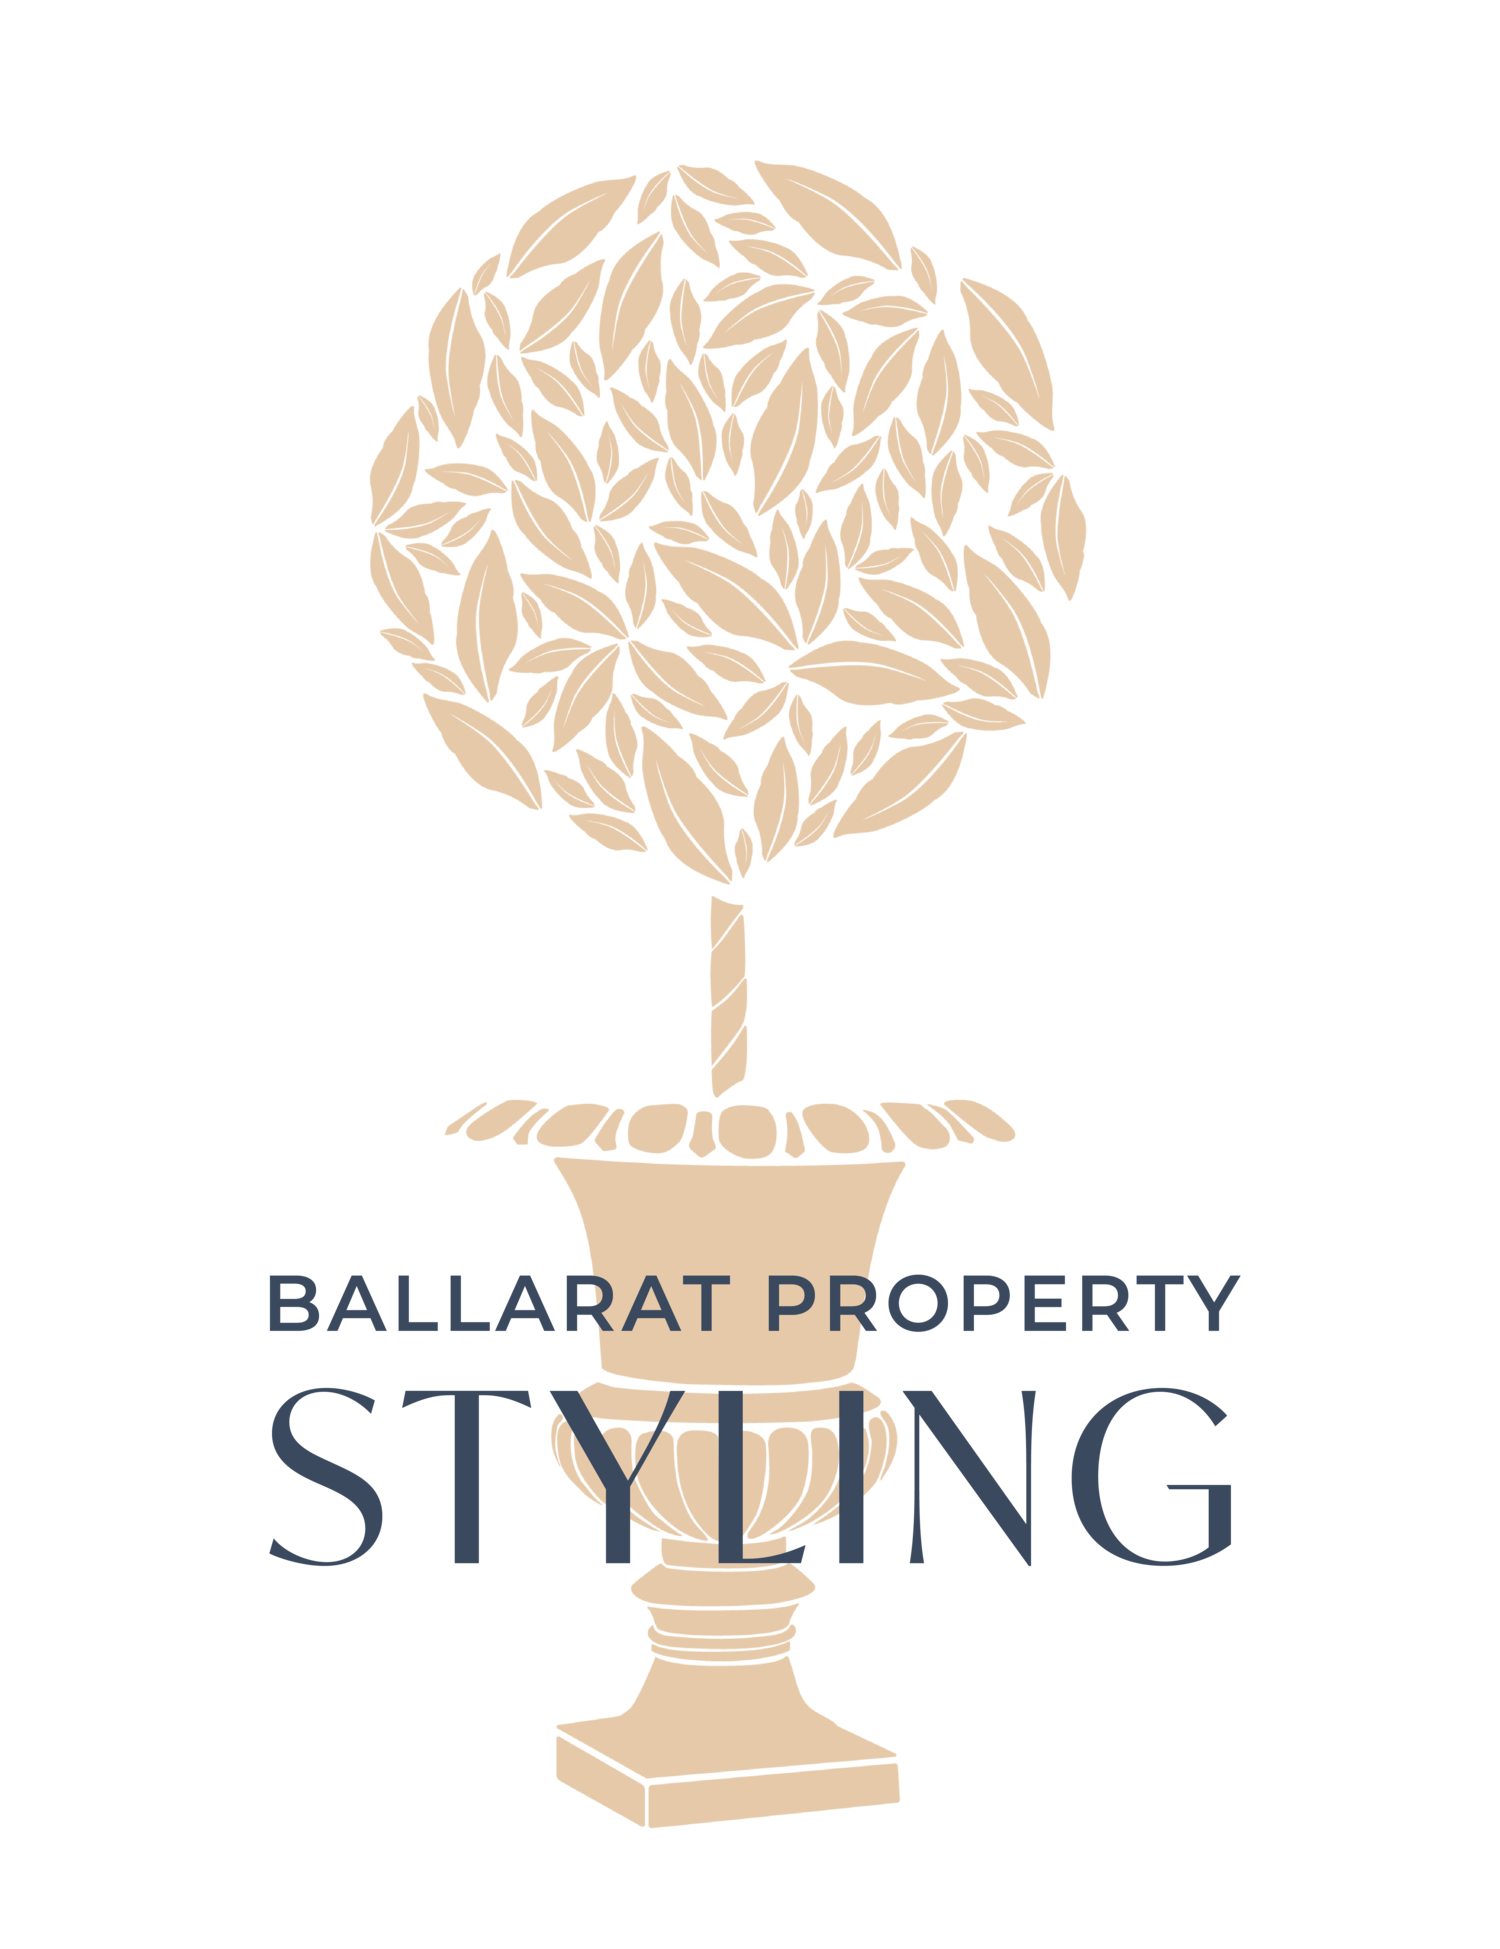 Ballarat Property Styling